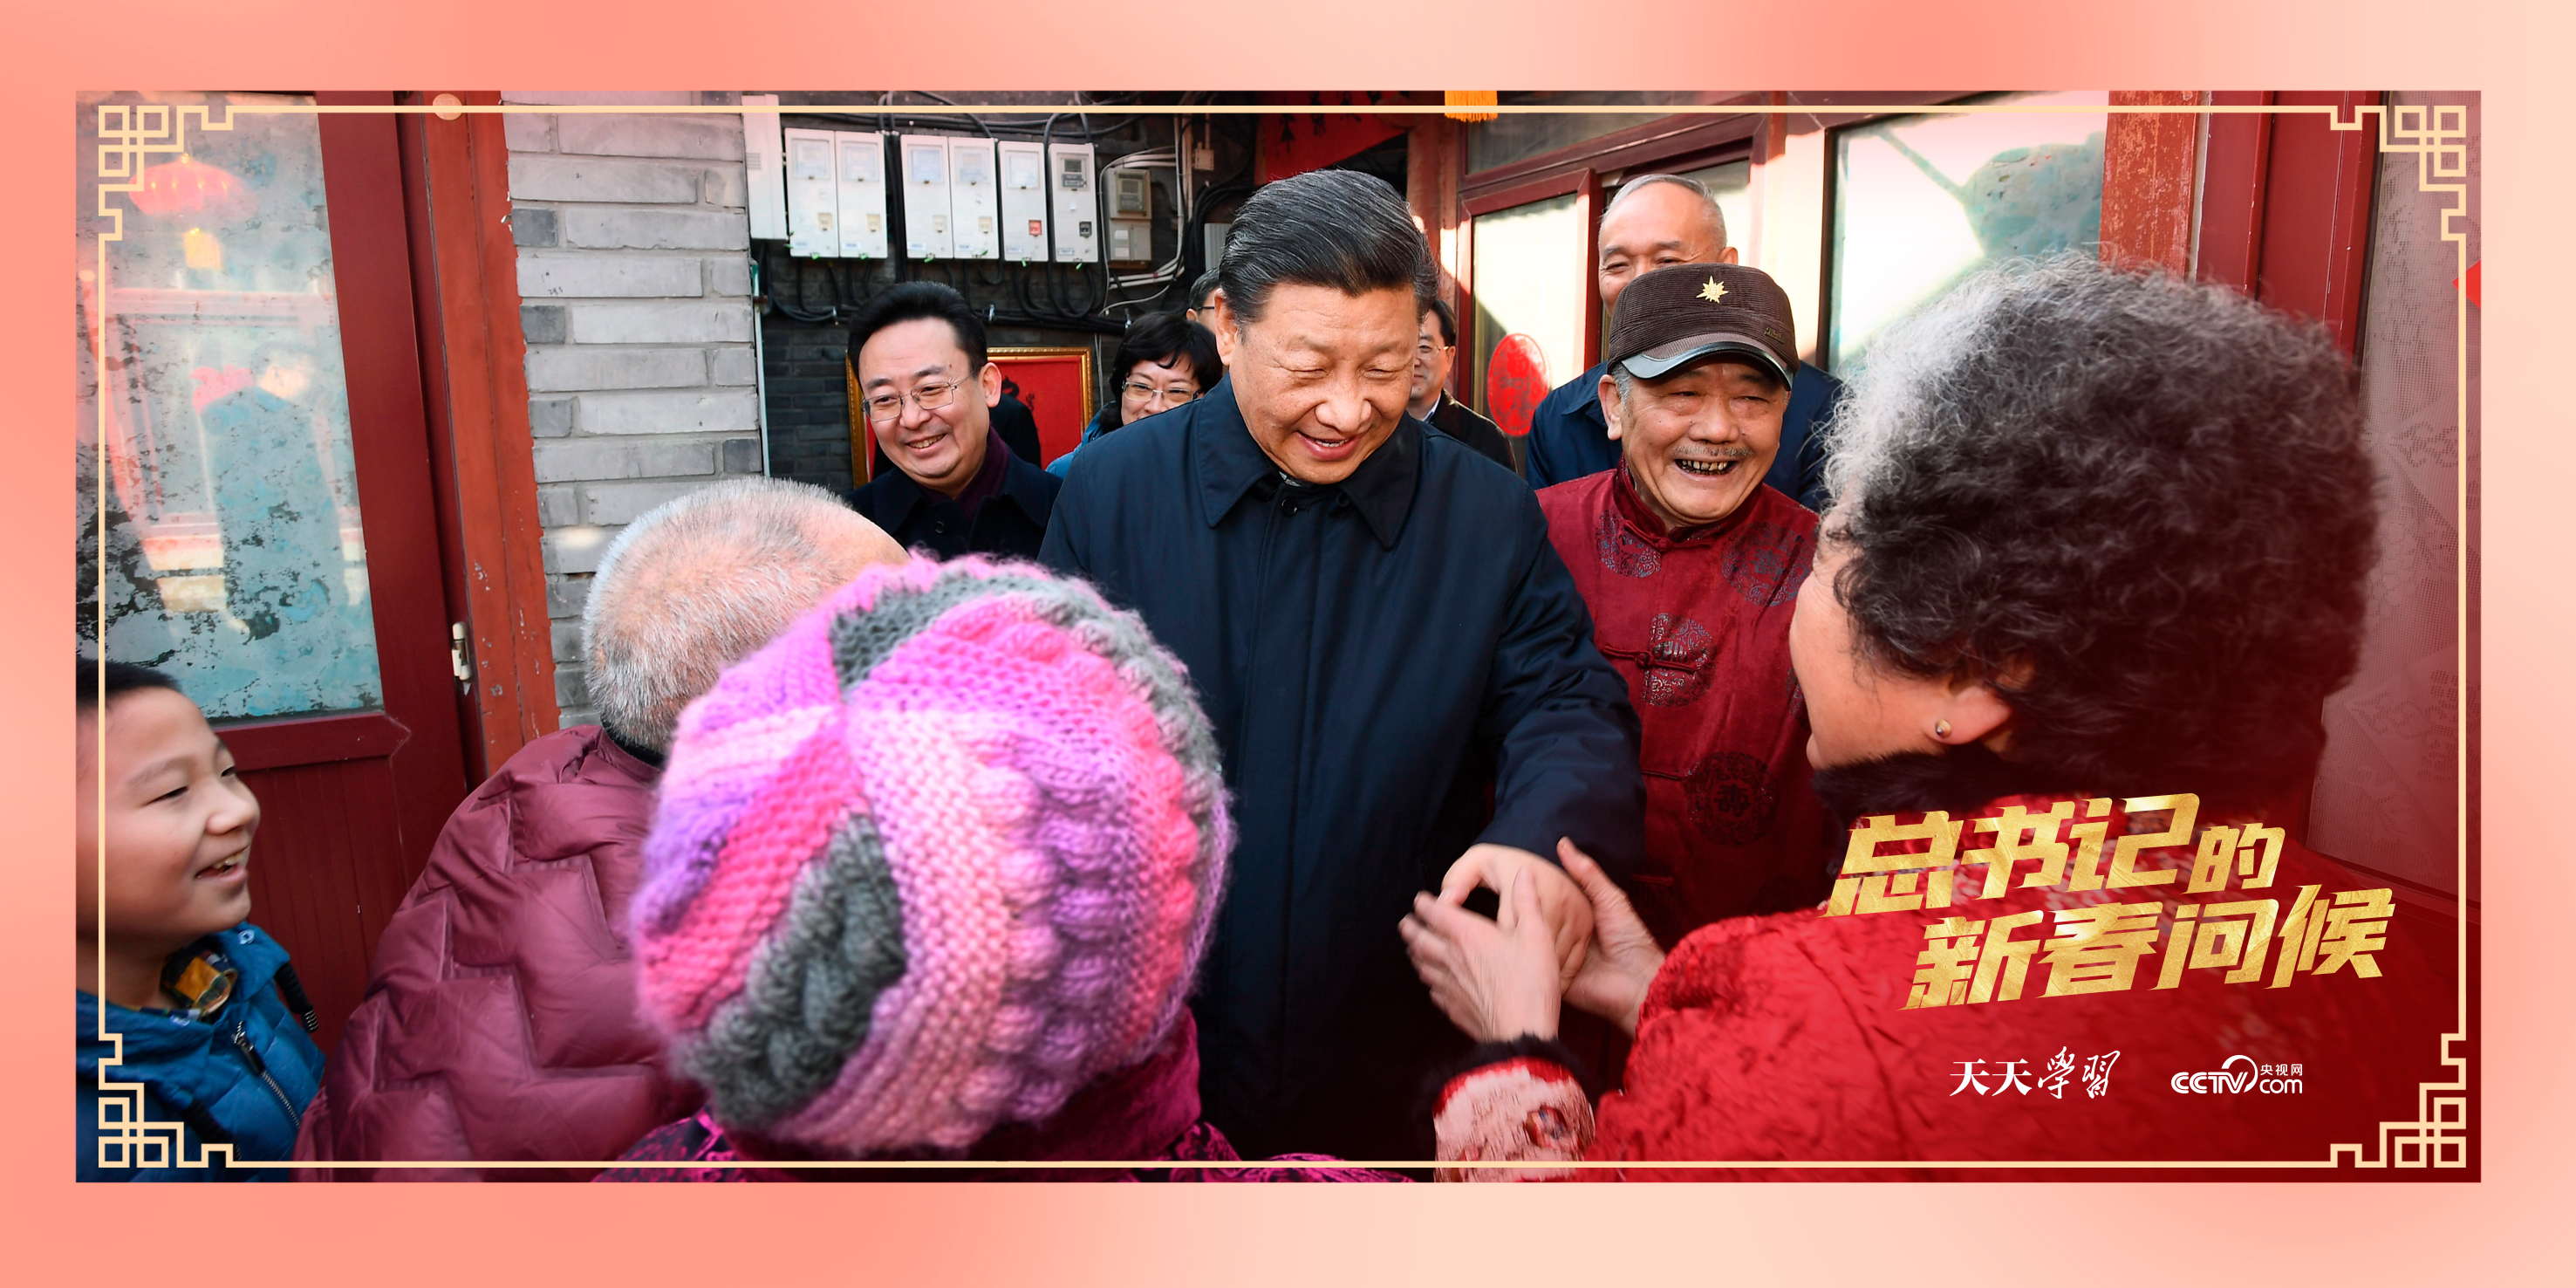 2019年2月1日，习近平总书记在北京看望慰问基层干部群众，考察北京冬奥会、冬残奥会筹办工作。